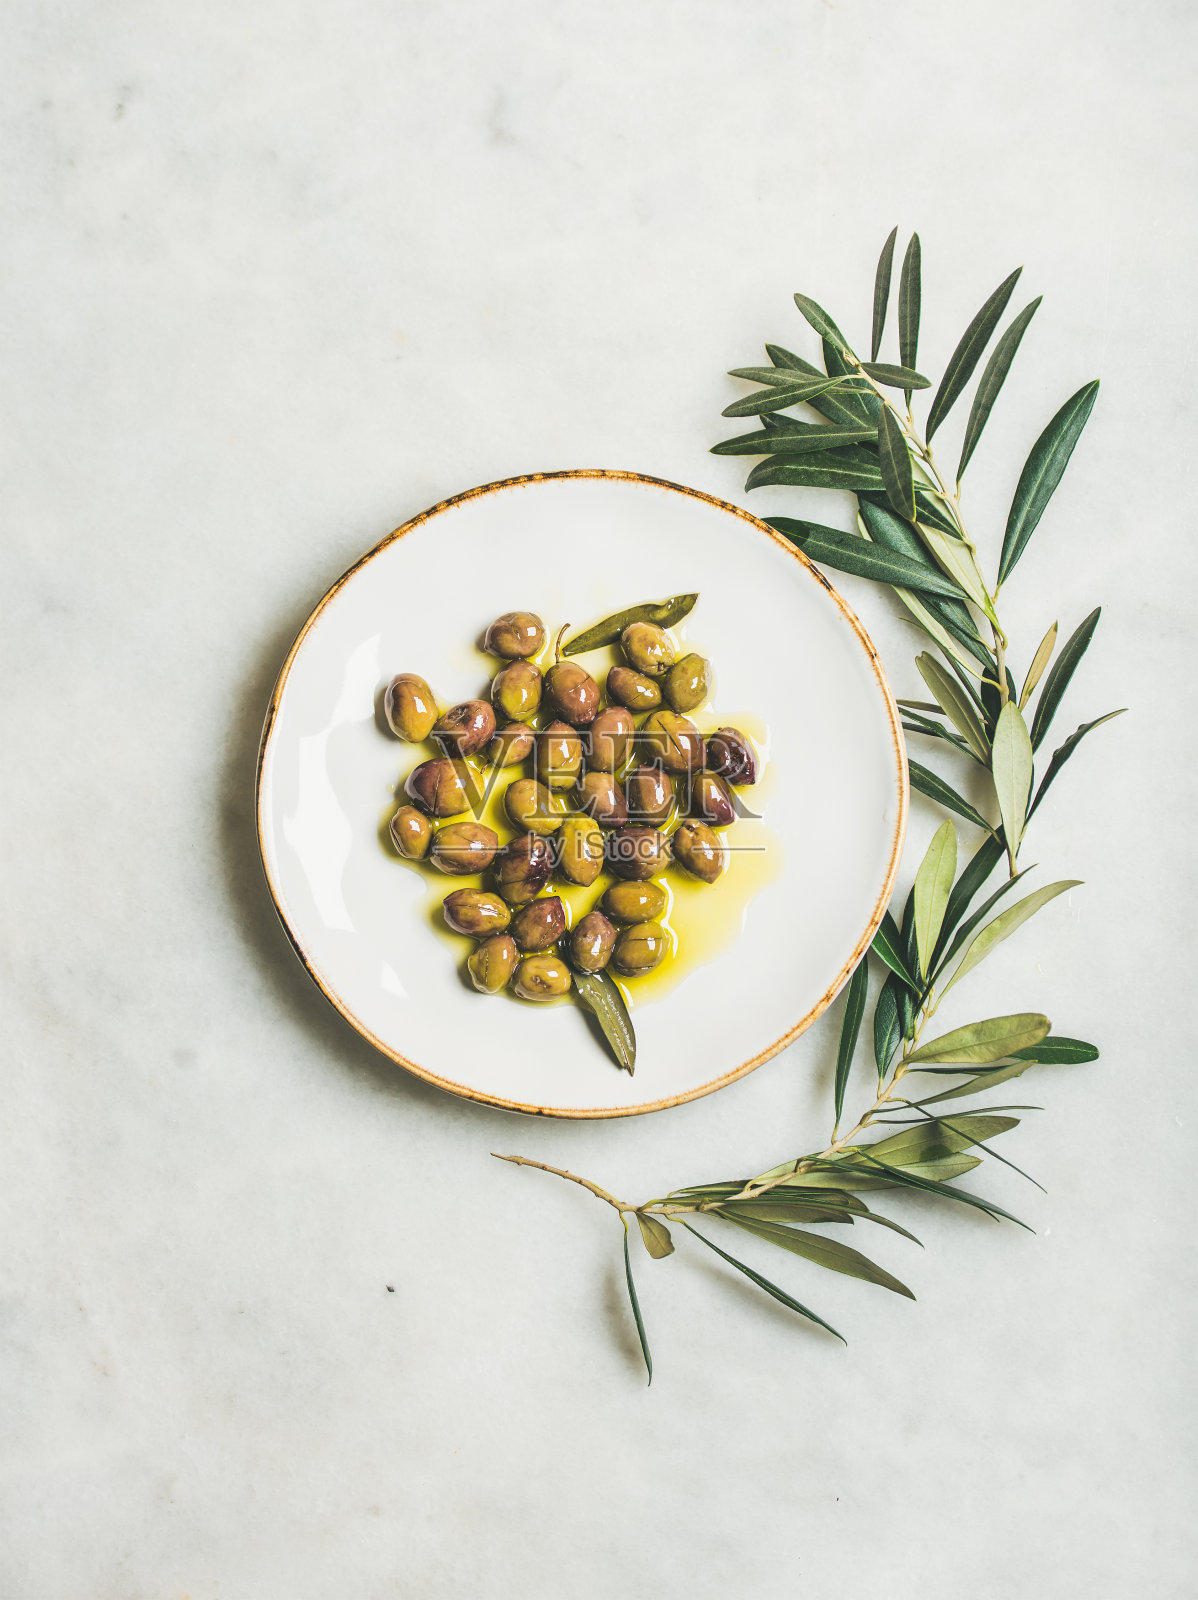 用初榨橄榄油腌制的地中海绿橄榄装盘照片摄影图片